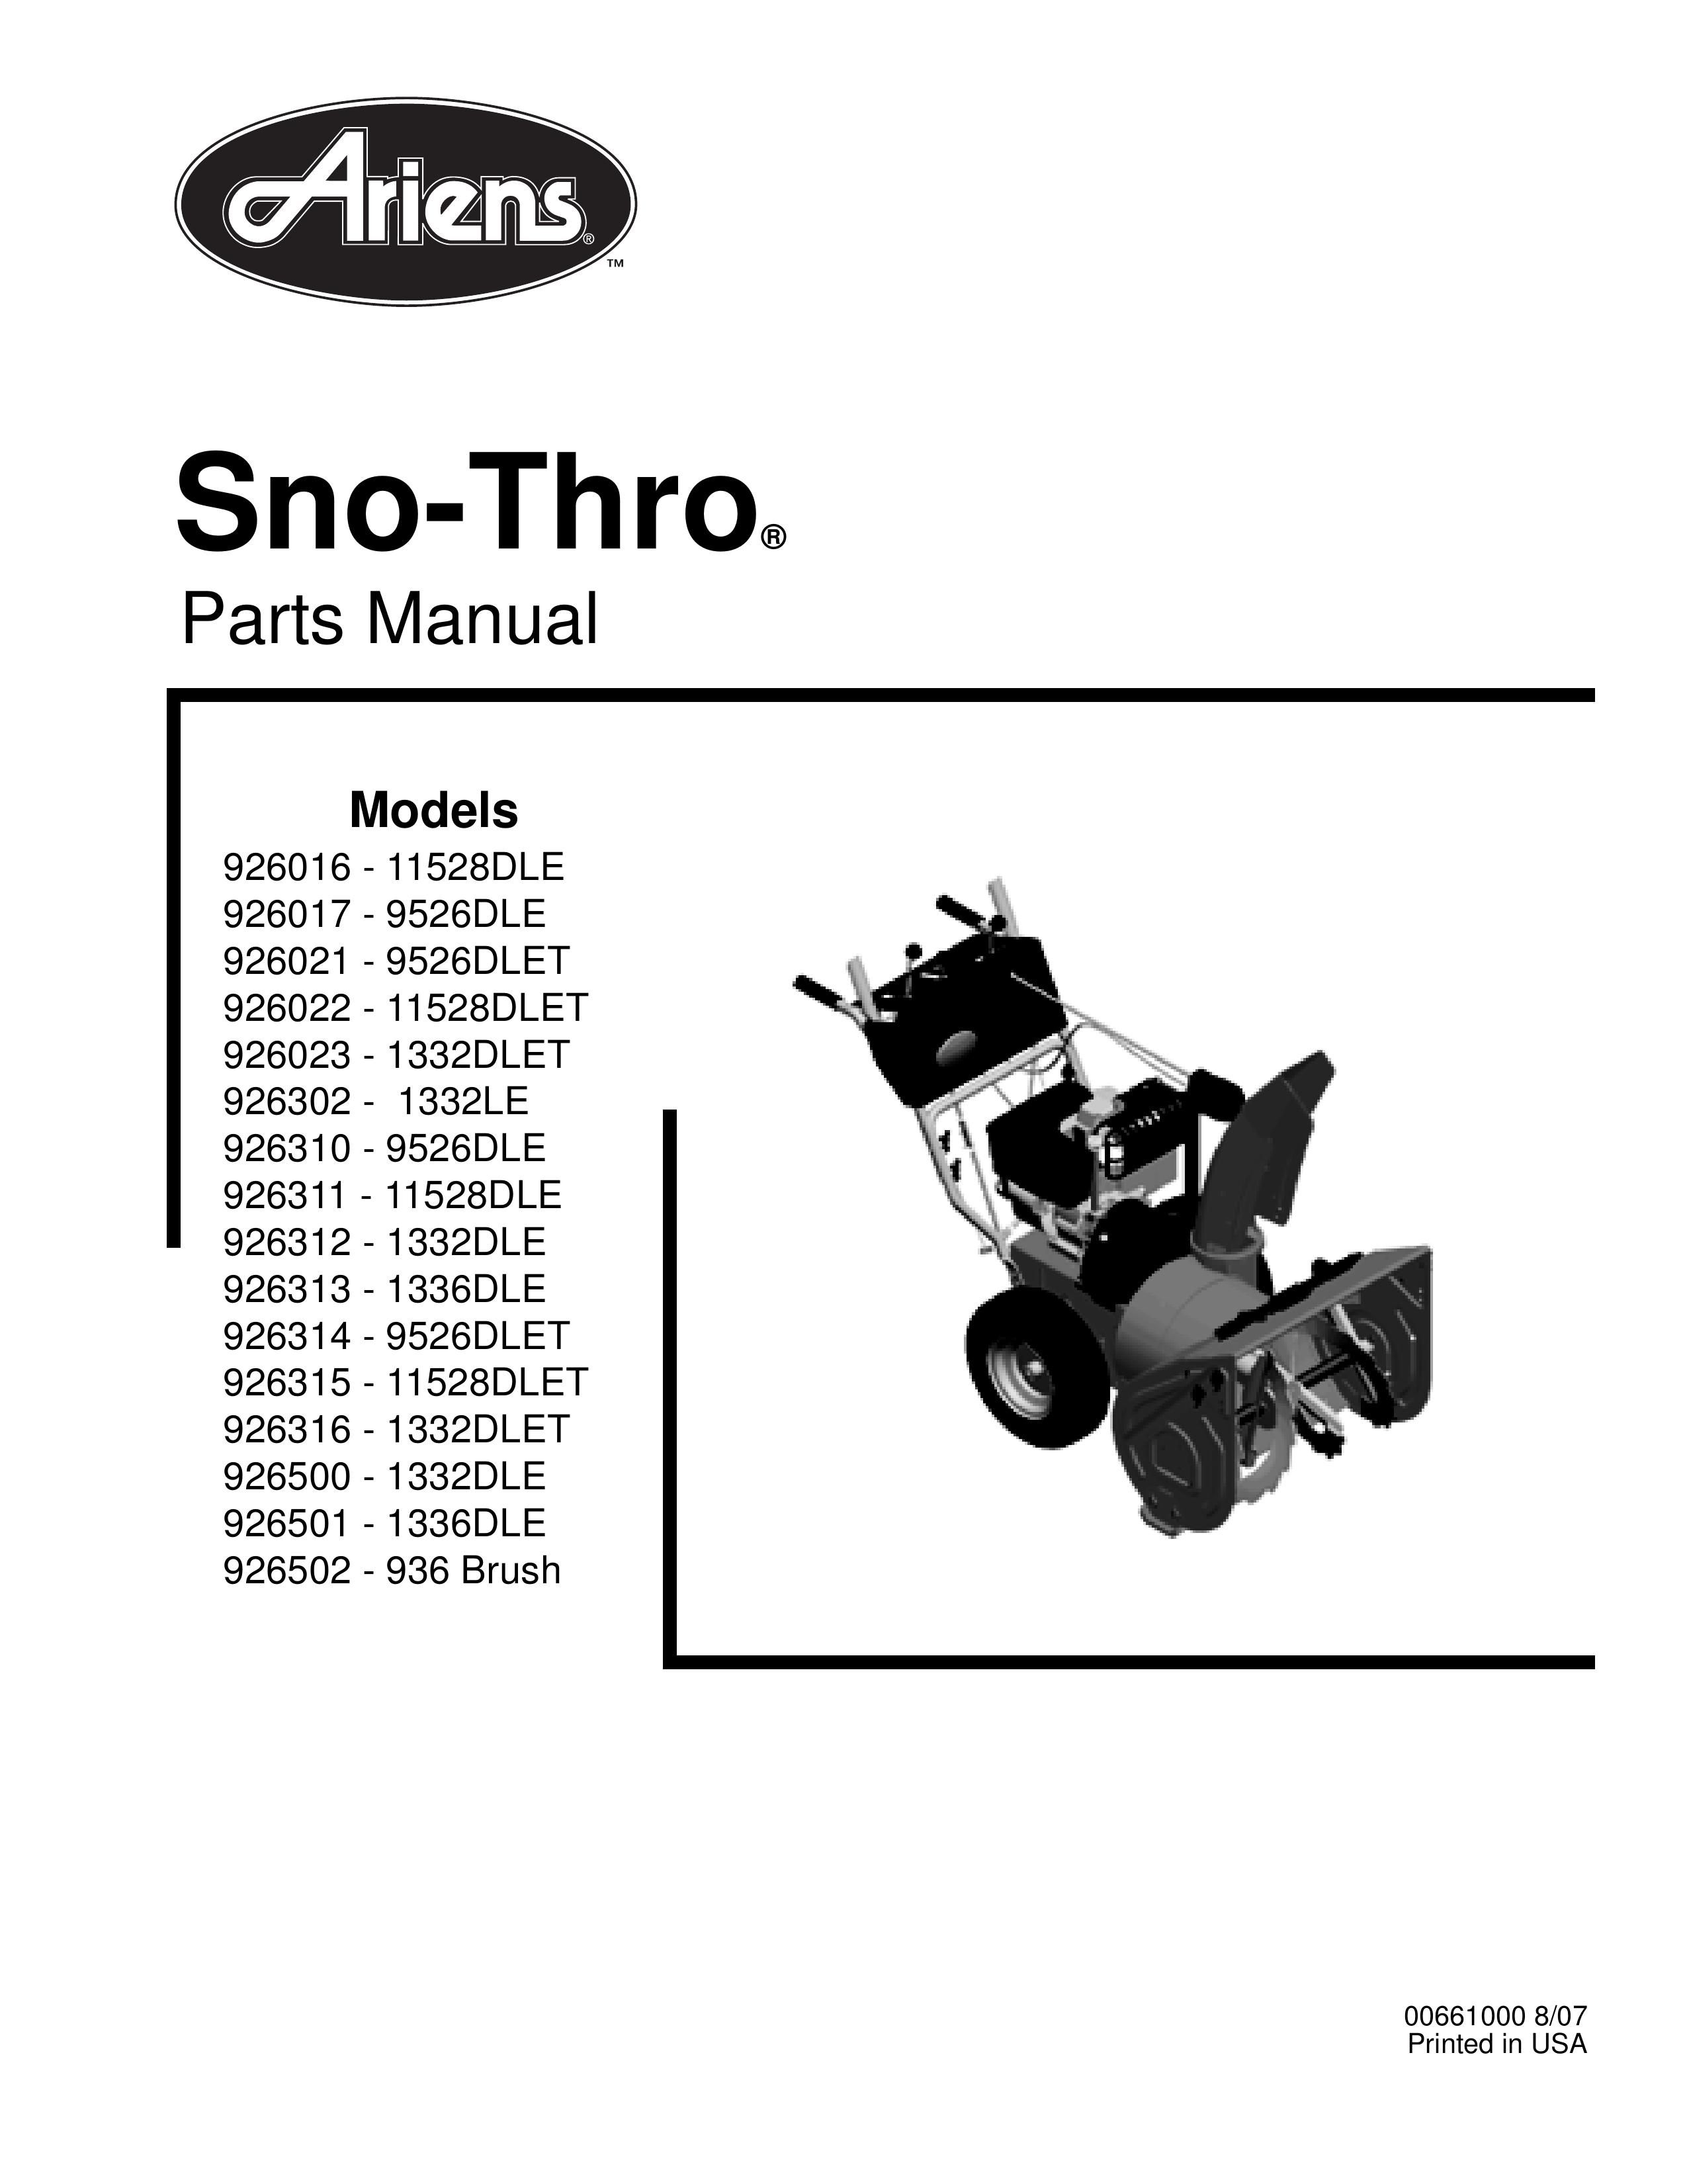 Ariens 926302 - 1332LE Snow Blower Attachment User Manual